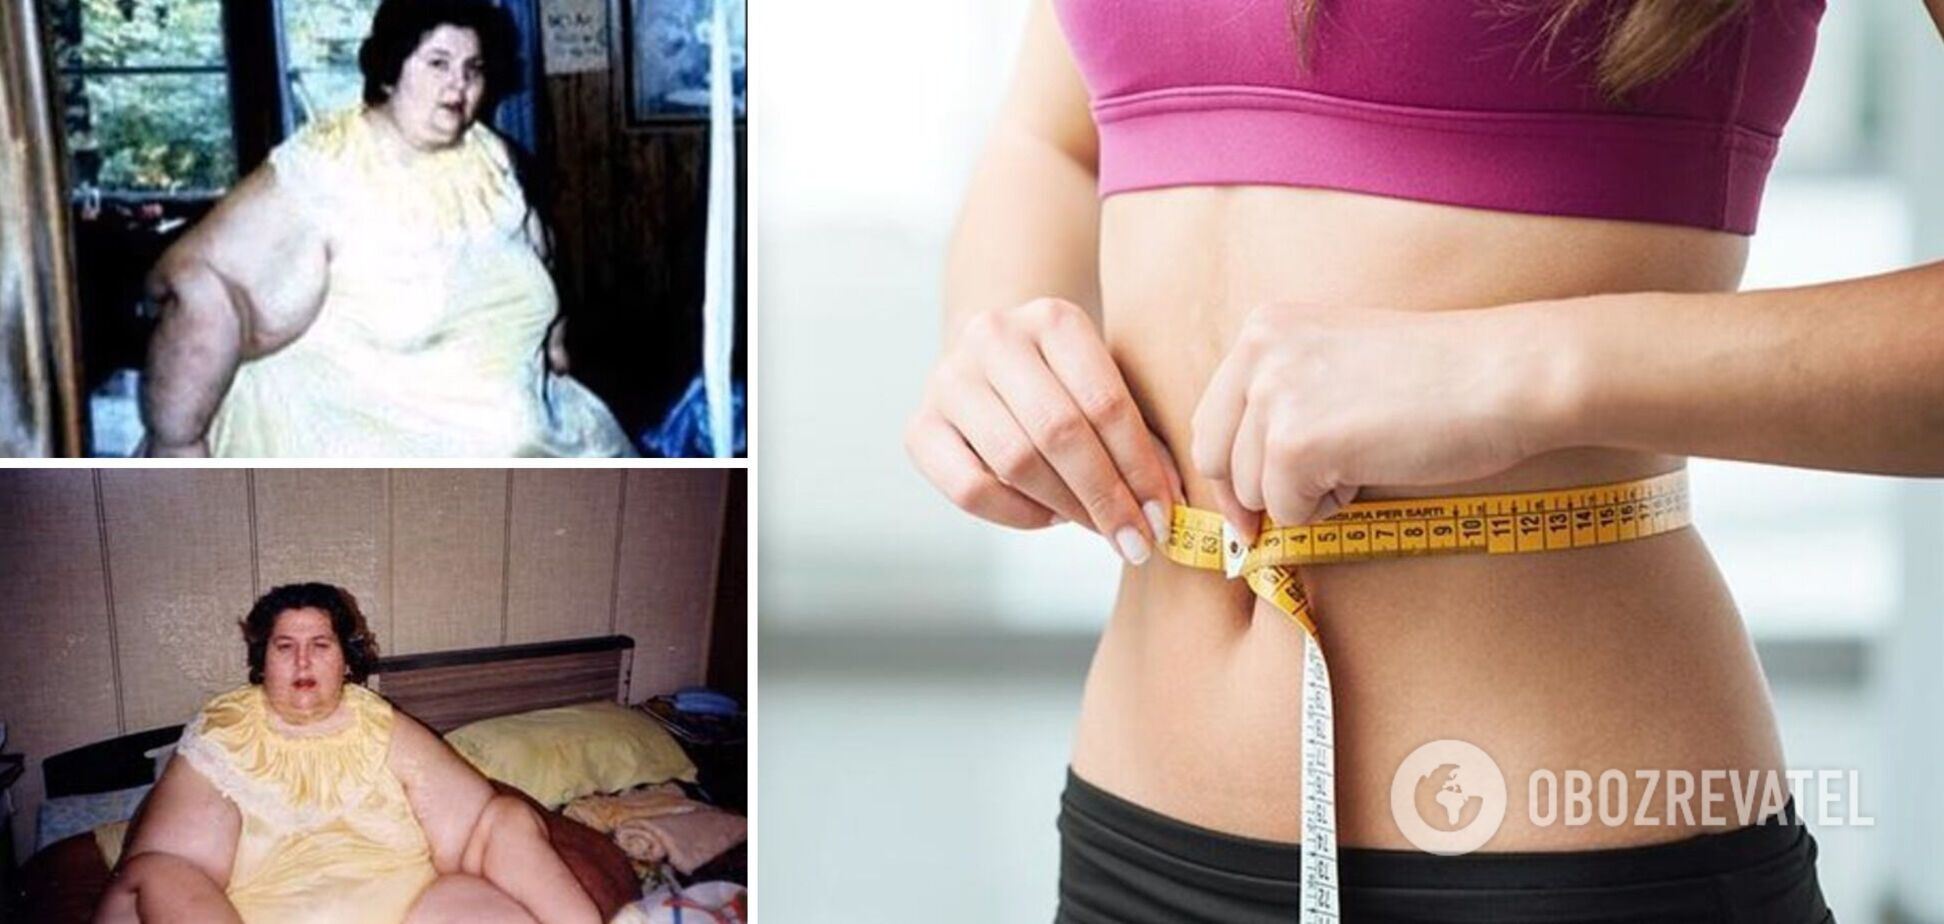 Как выглядела самая толстая женщина в мире, похудевшая на 416 кг. Фото до и после